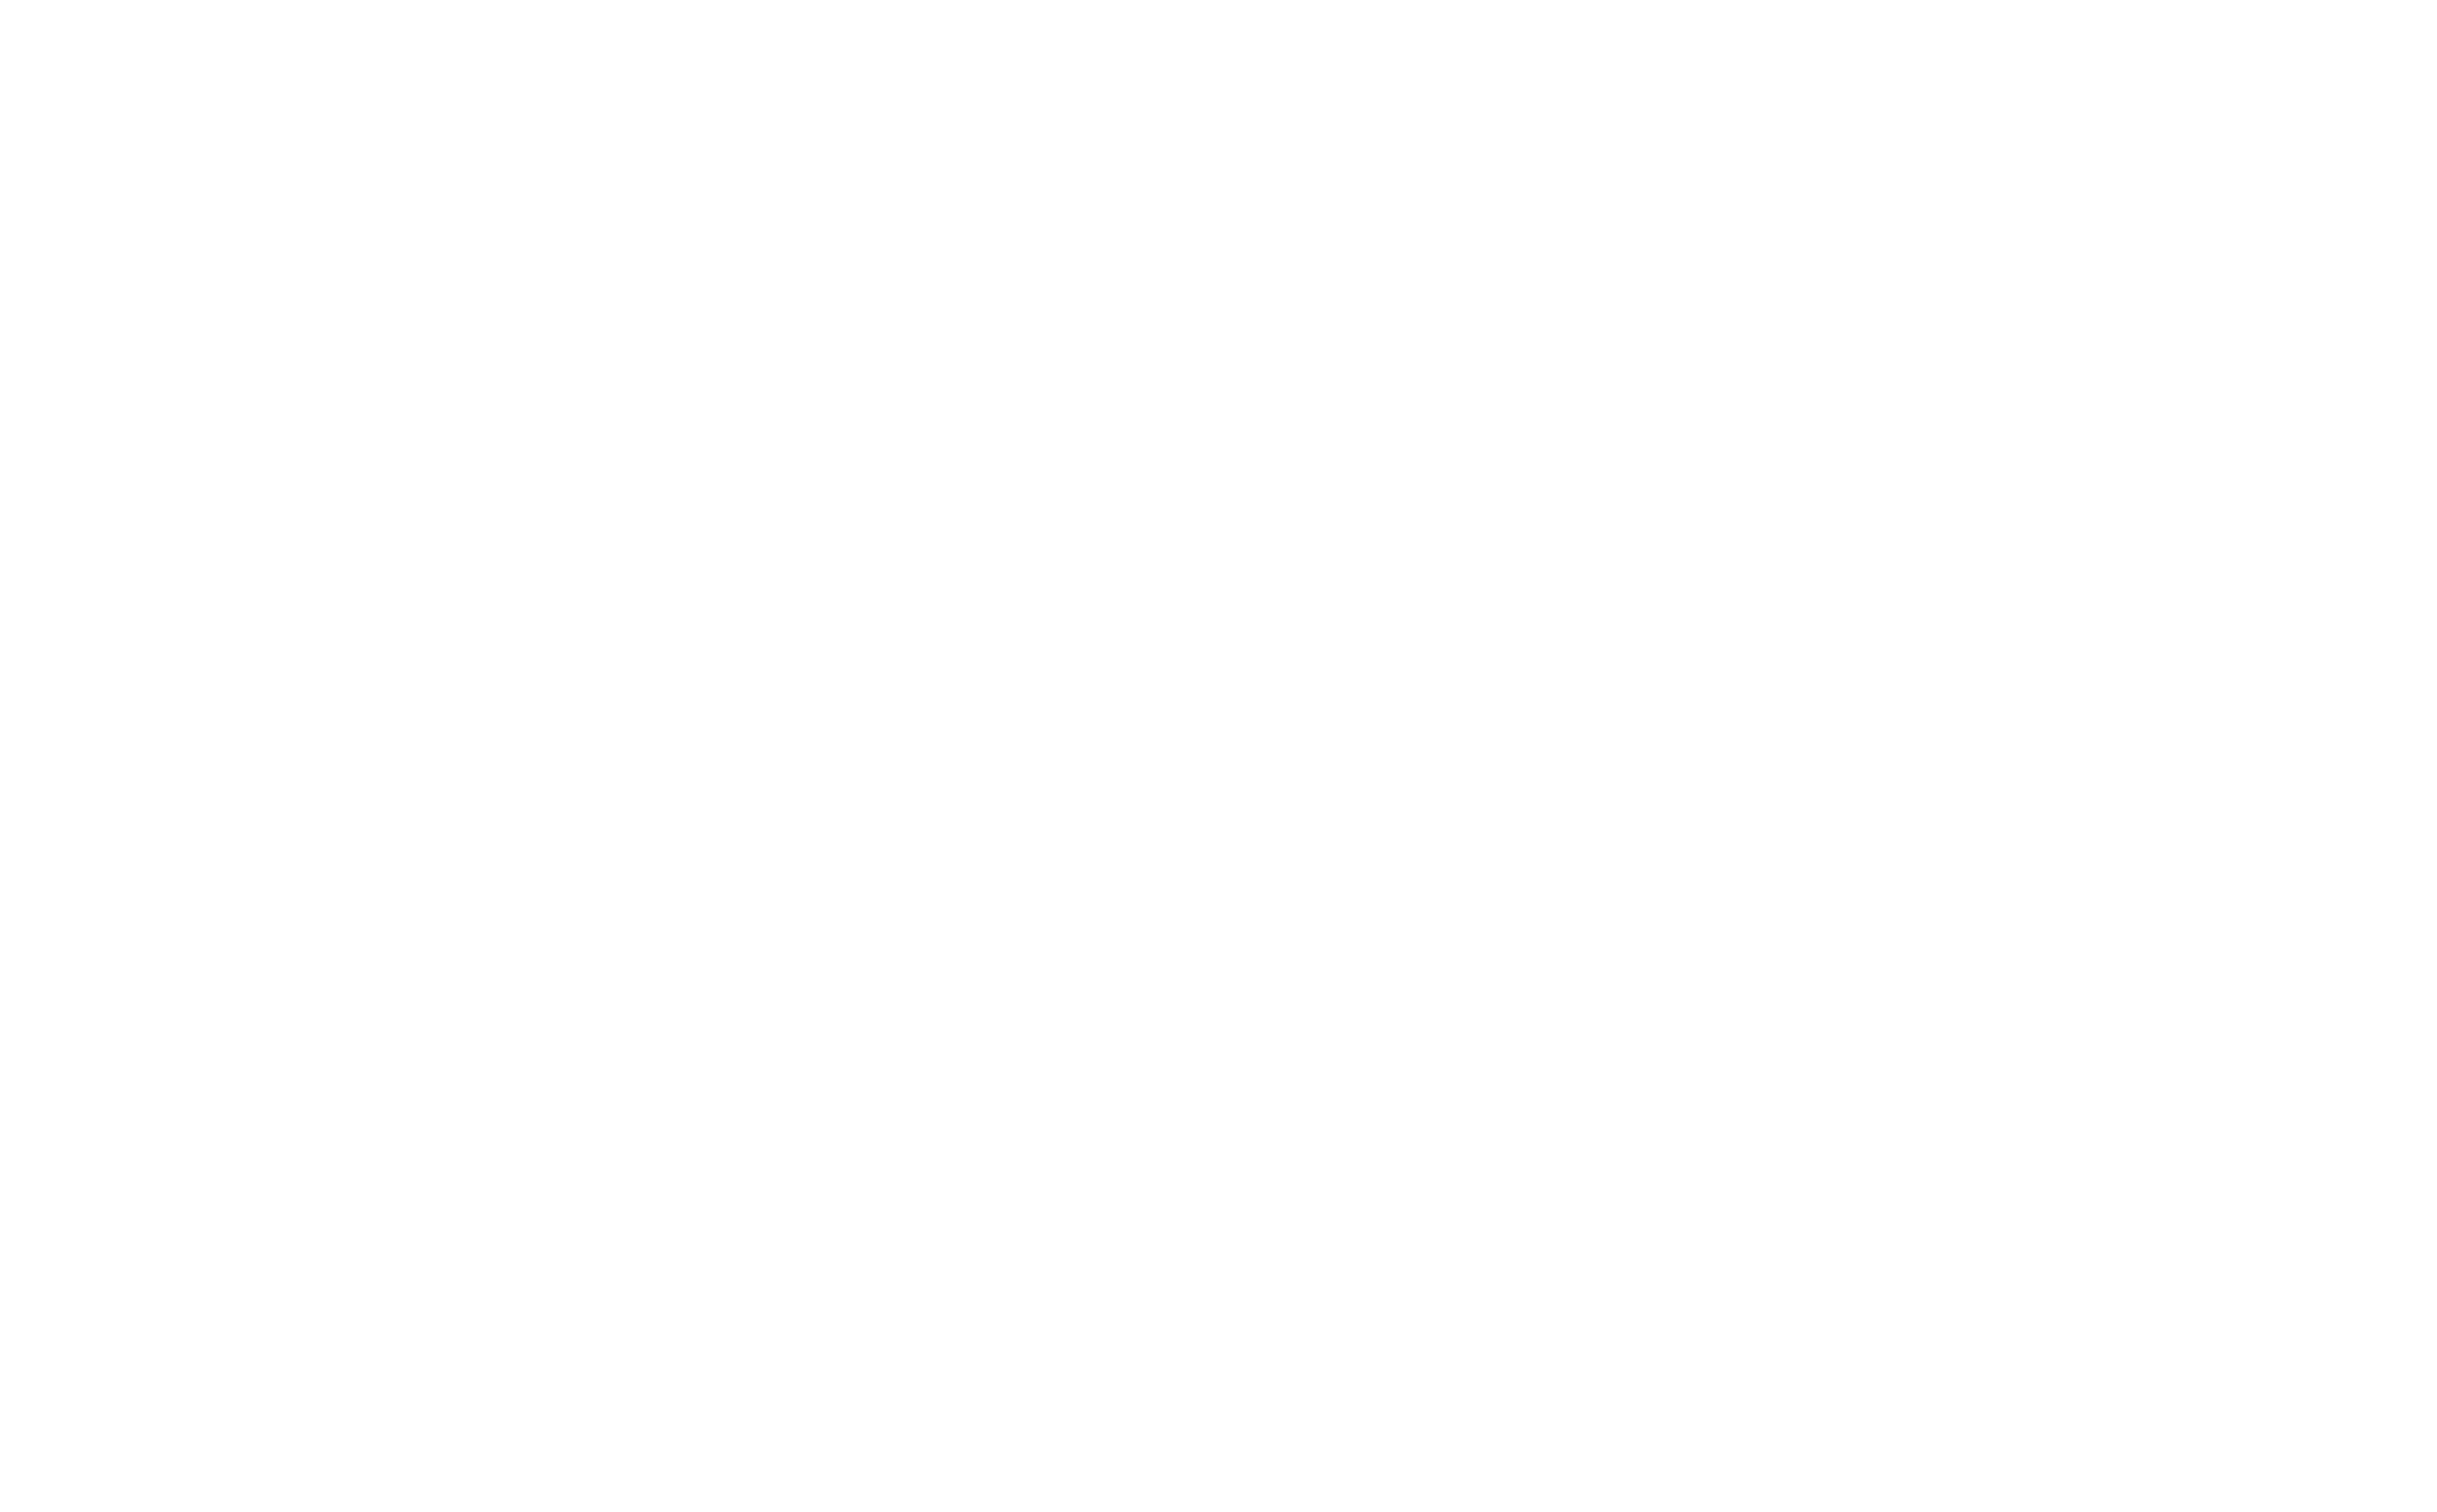 %luca.fruzza/visual.designerWELCOME